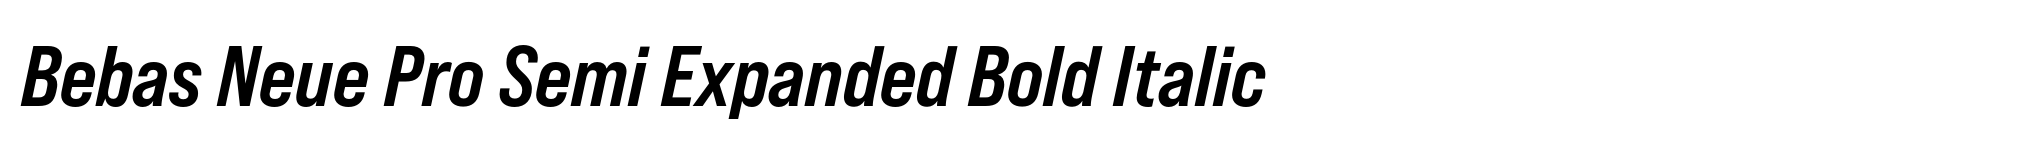 Bebas Neue Pro Semi Expanded Bold Italic image